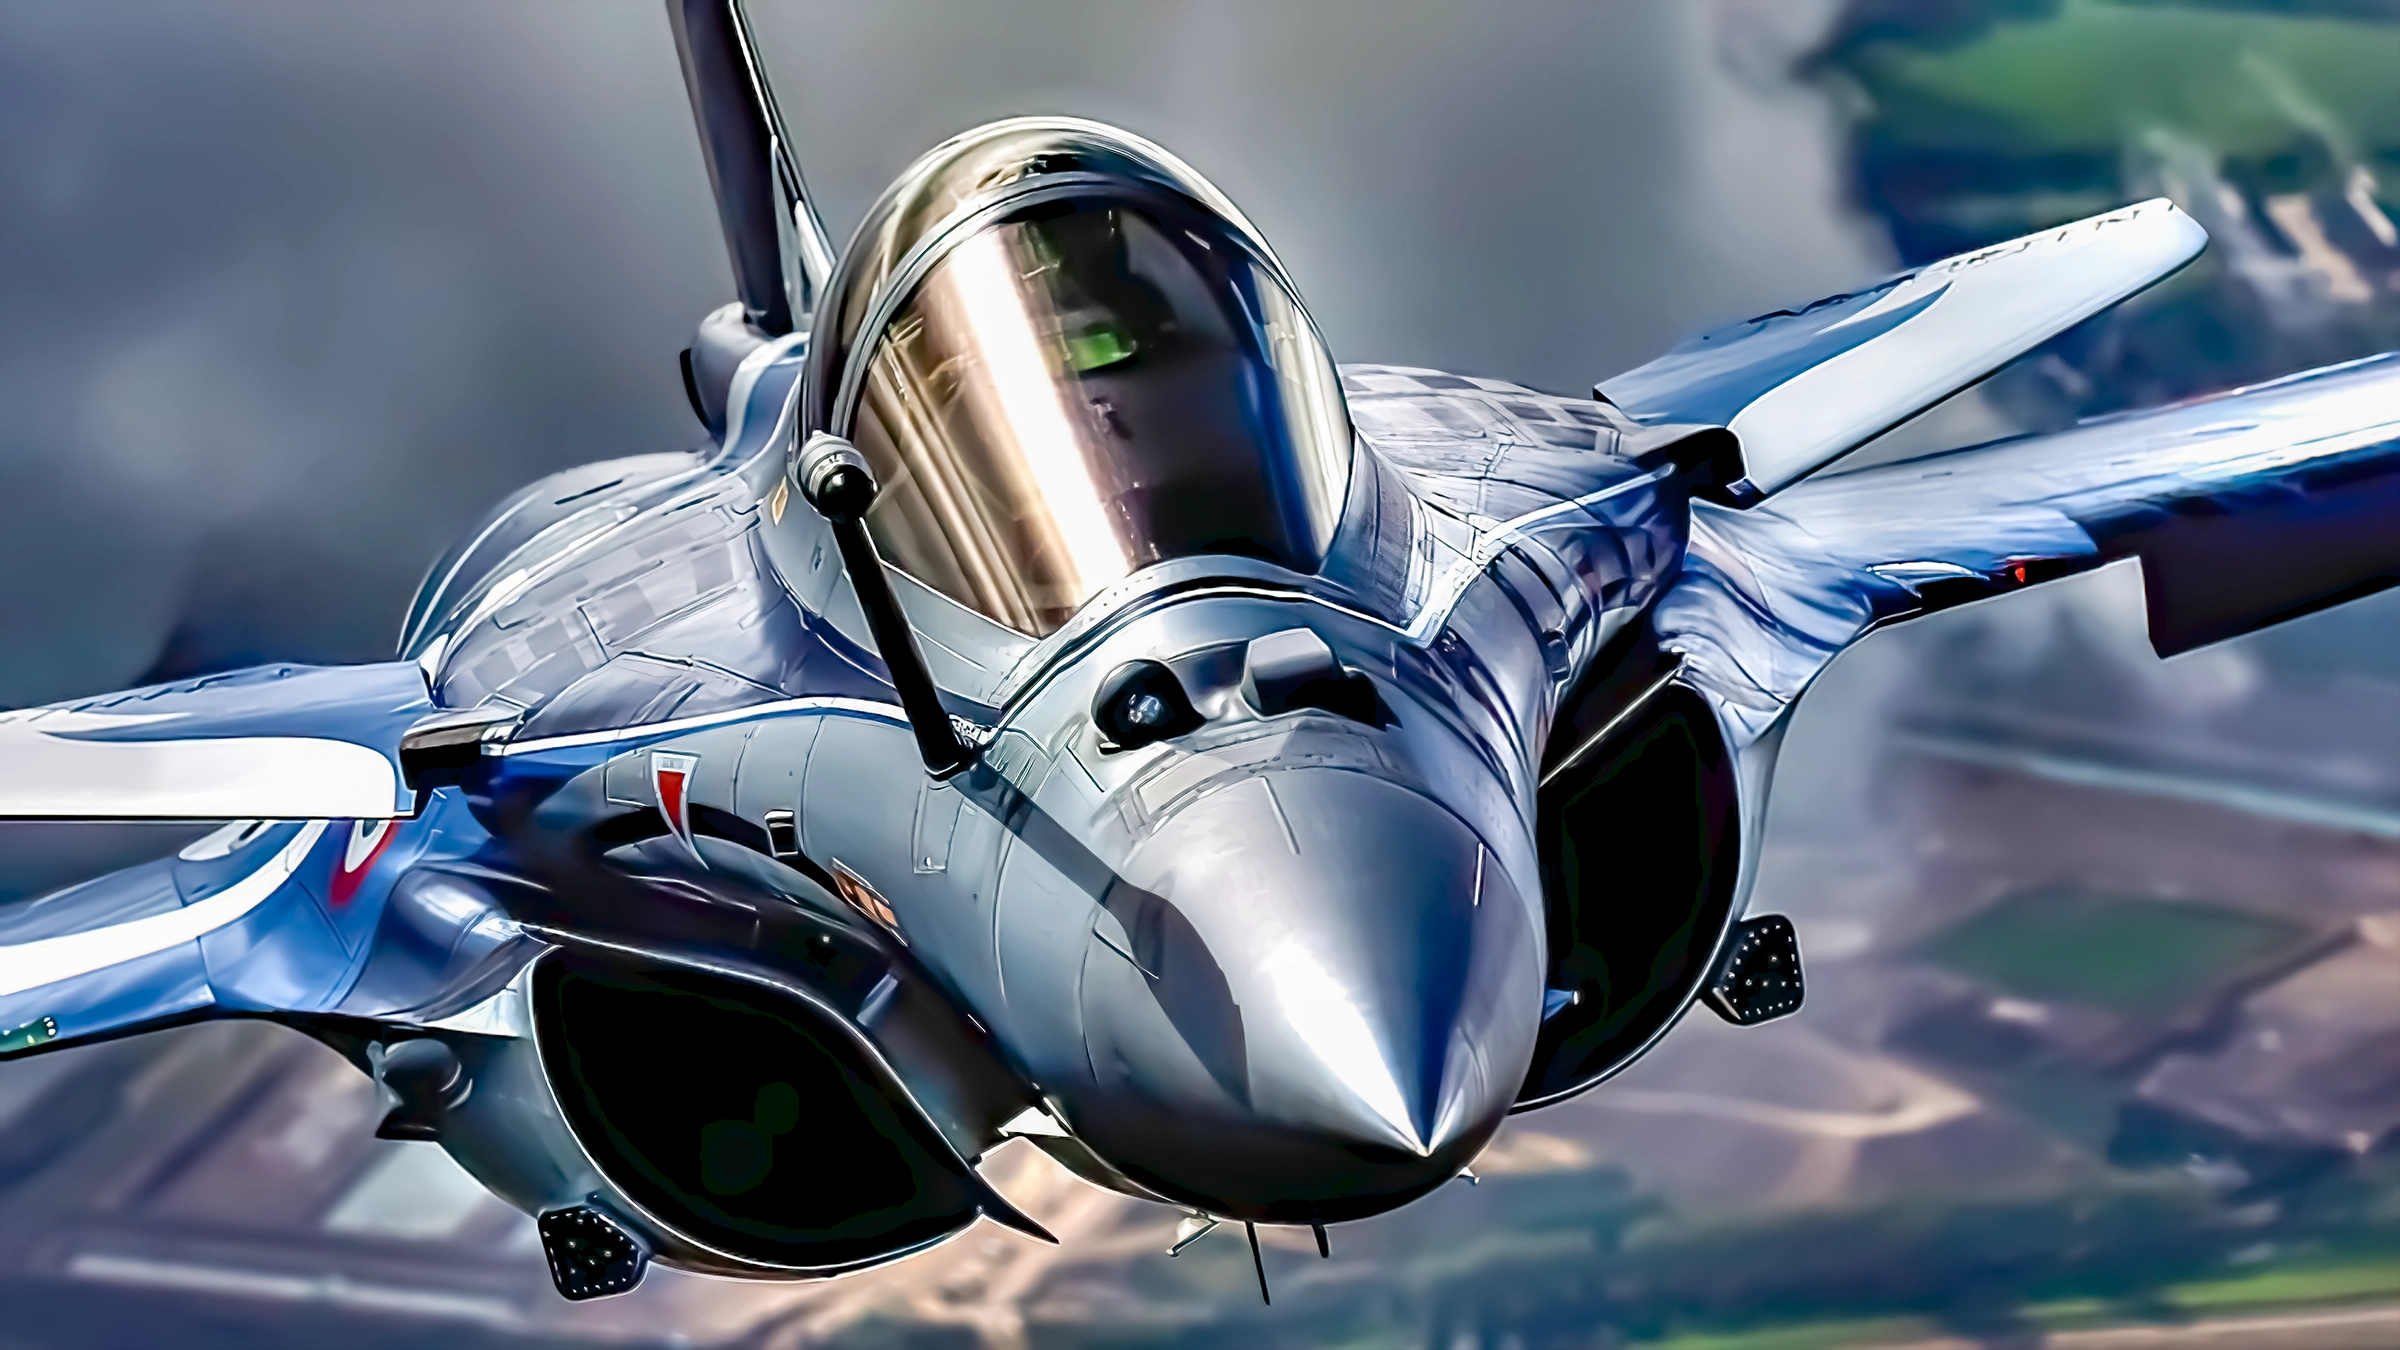 Rafale F5 francés: Una innovación en defensa aérea y guerra electrónica